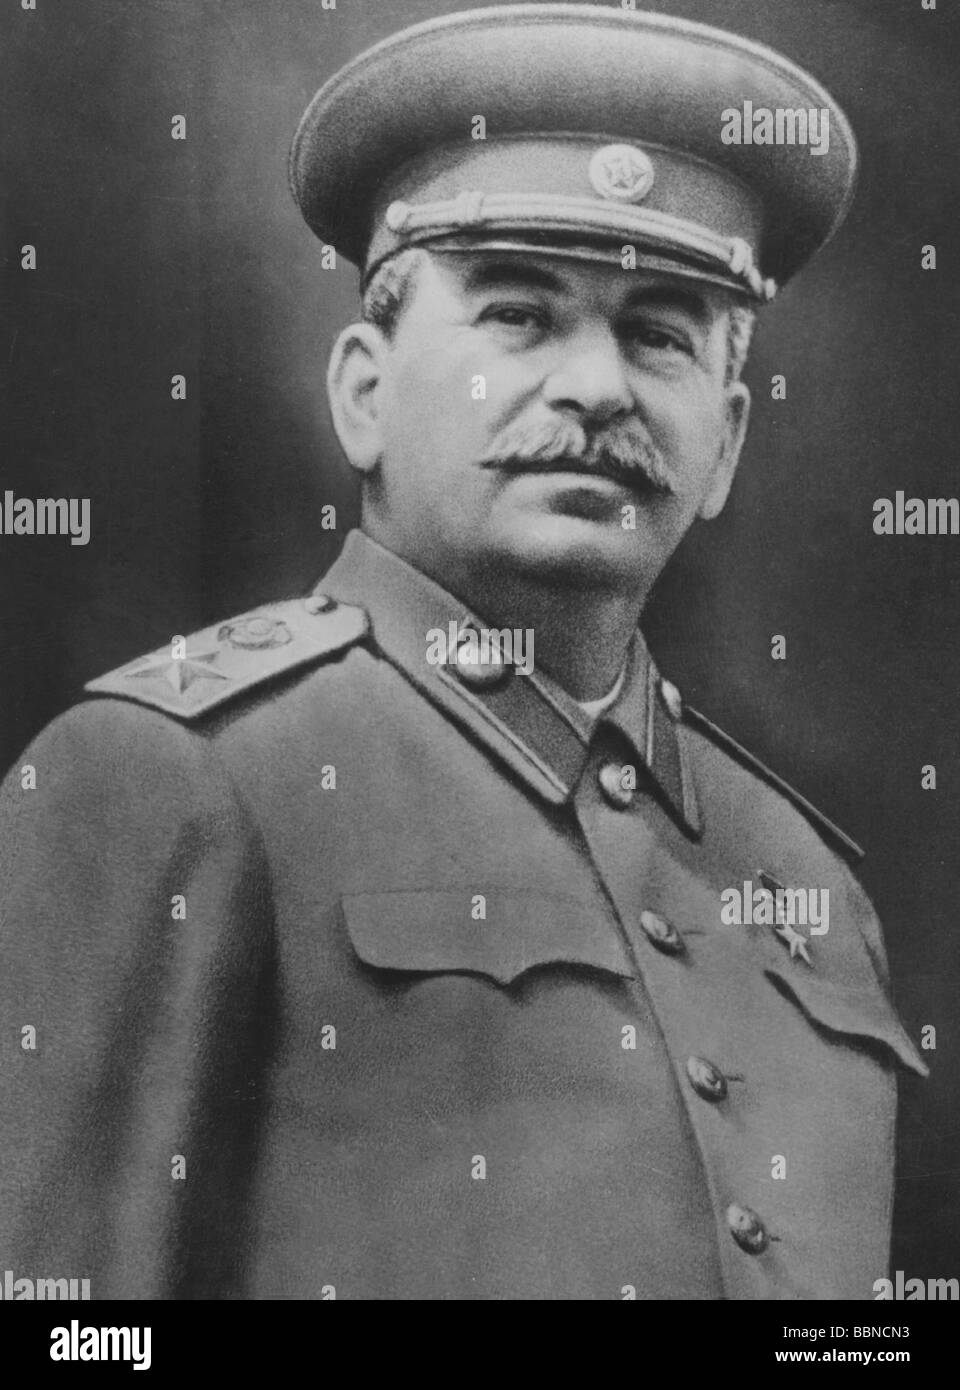 Stalin, Joseph Vissarionovich, 18.12.1879 - 5.3.1953, statista sovietico, Segretario generale del Partito Comunista dell'Unione Sovietica 1922 - 1953, ritratto, 1940s, Foto Stock